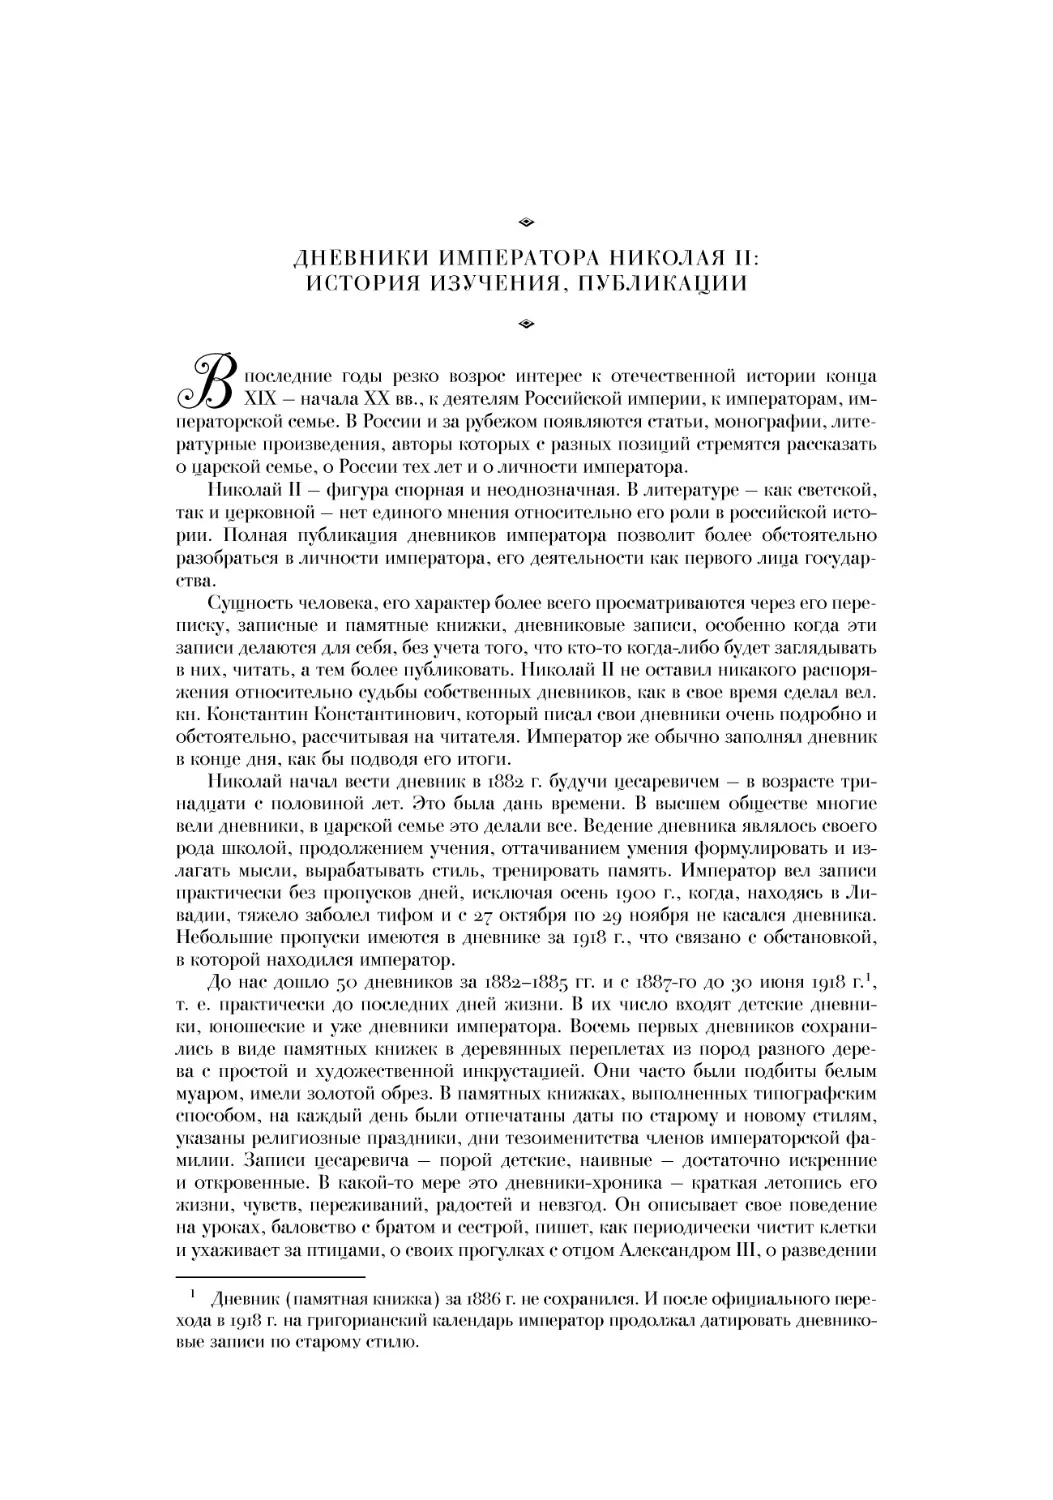 Дневники императора Николая II: история изучения, публикации